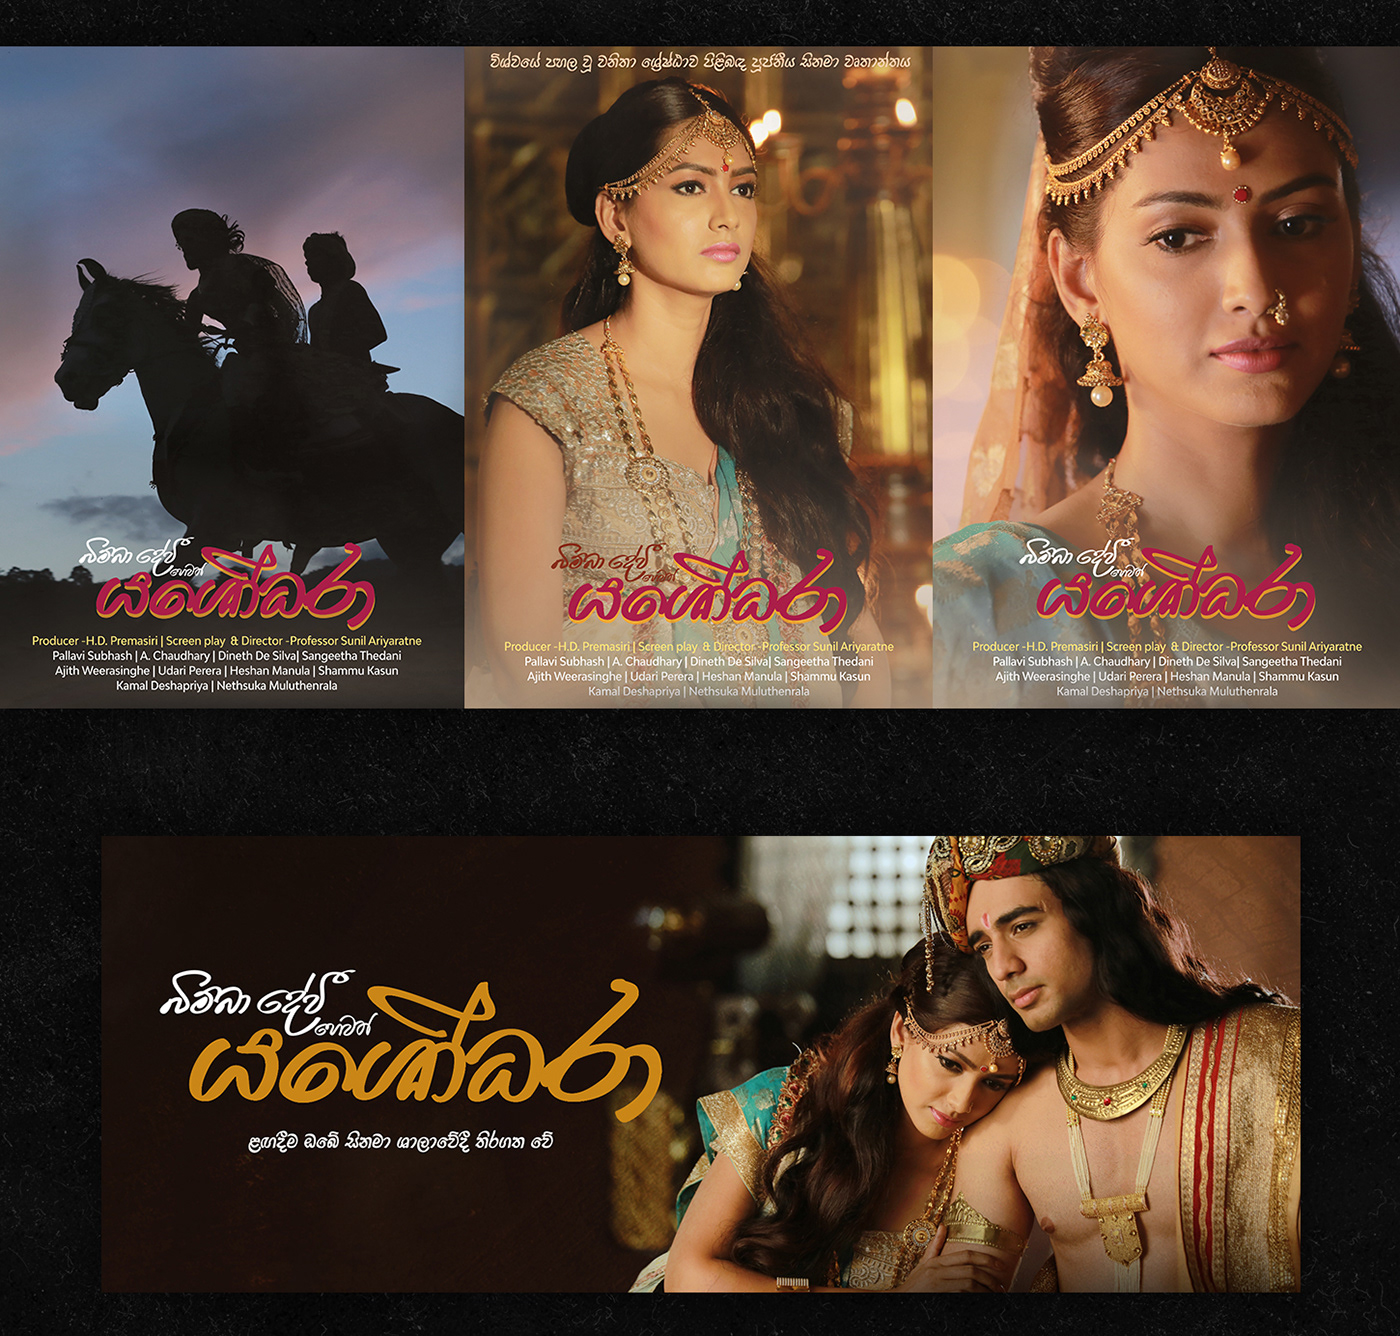 YASHODHARA movie Sinhala Sri Lankan Cinema cover poster key arts sinhala cinema romance